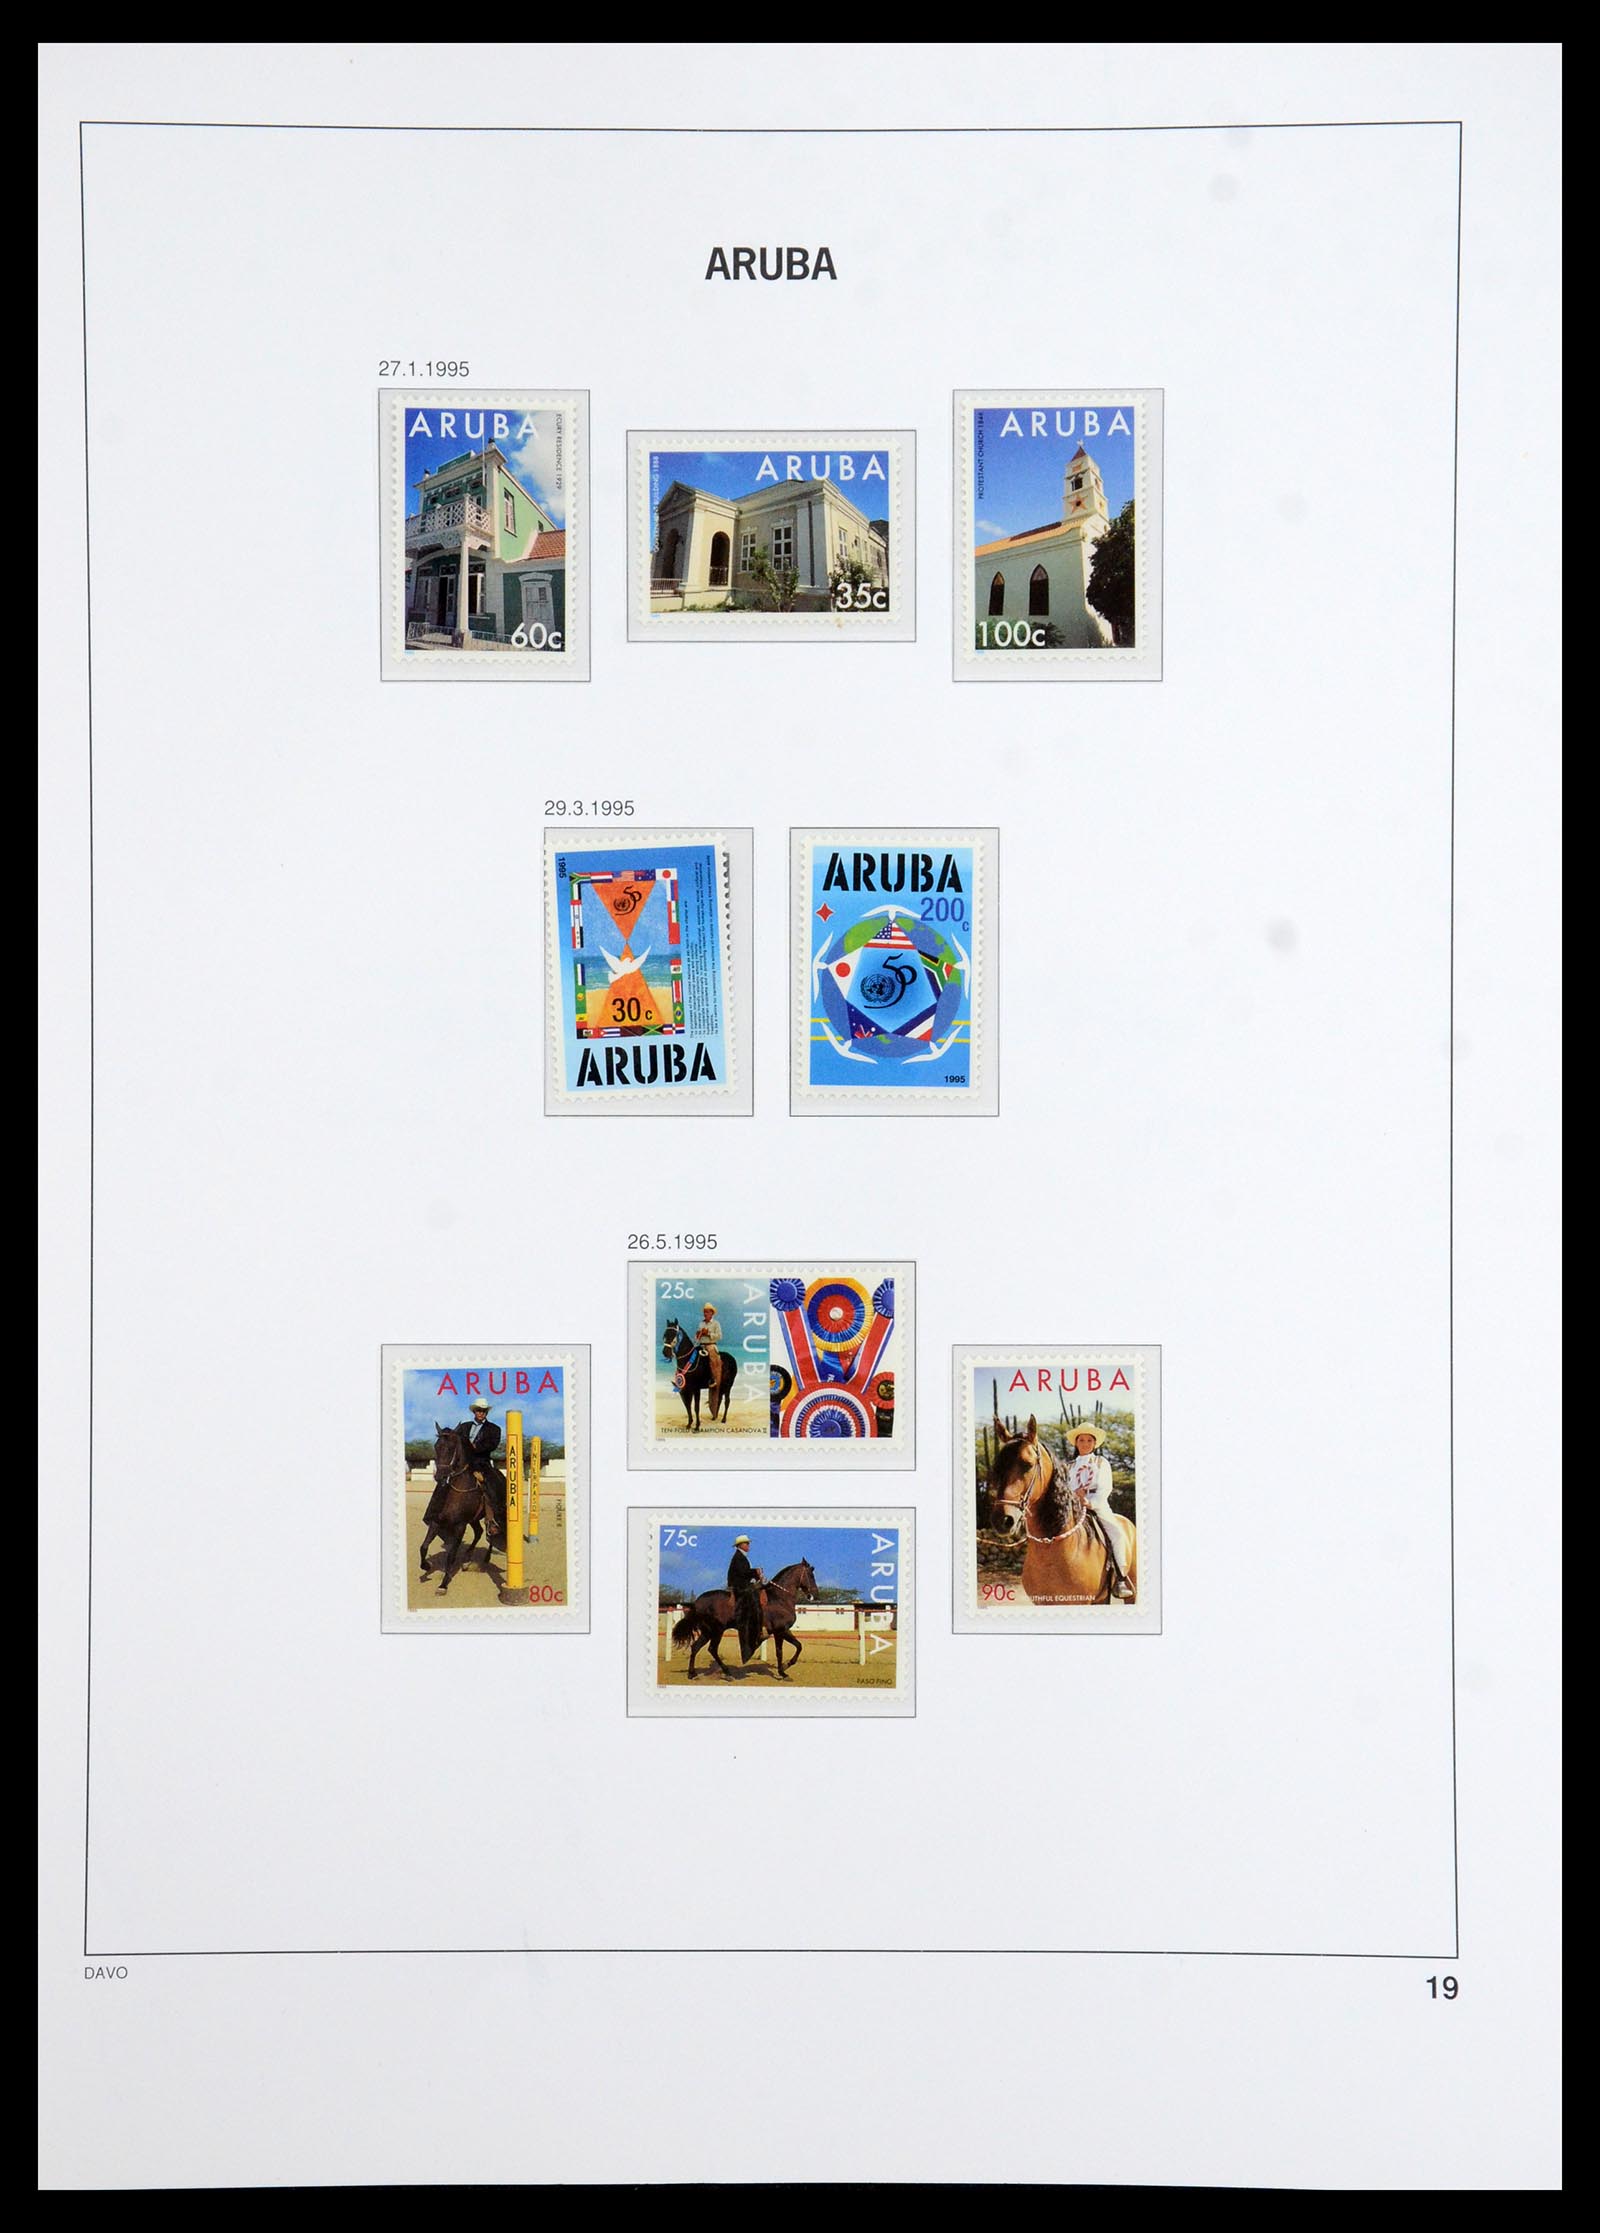 36369 019 - Stamp collection 36369 Aruba 1986-2009.